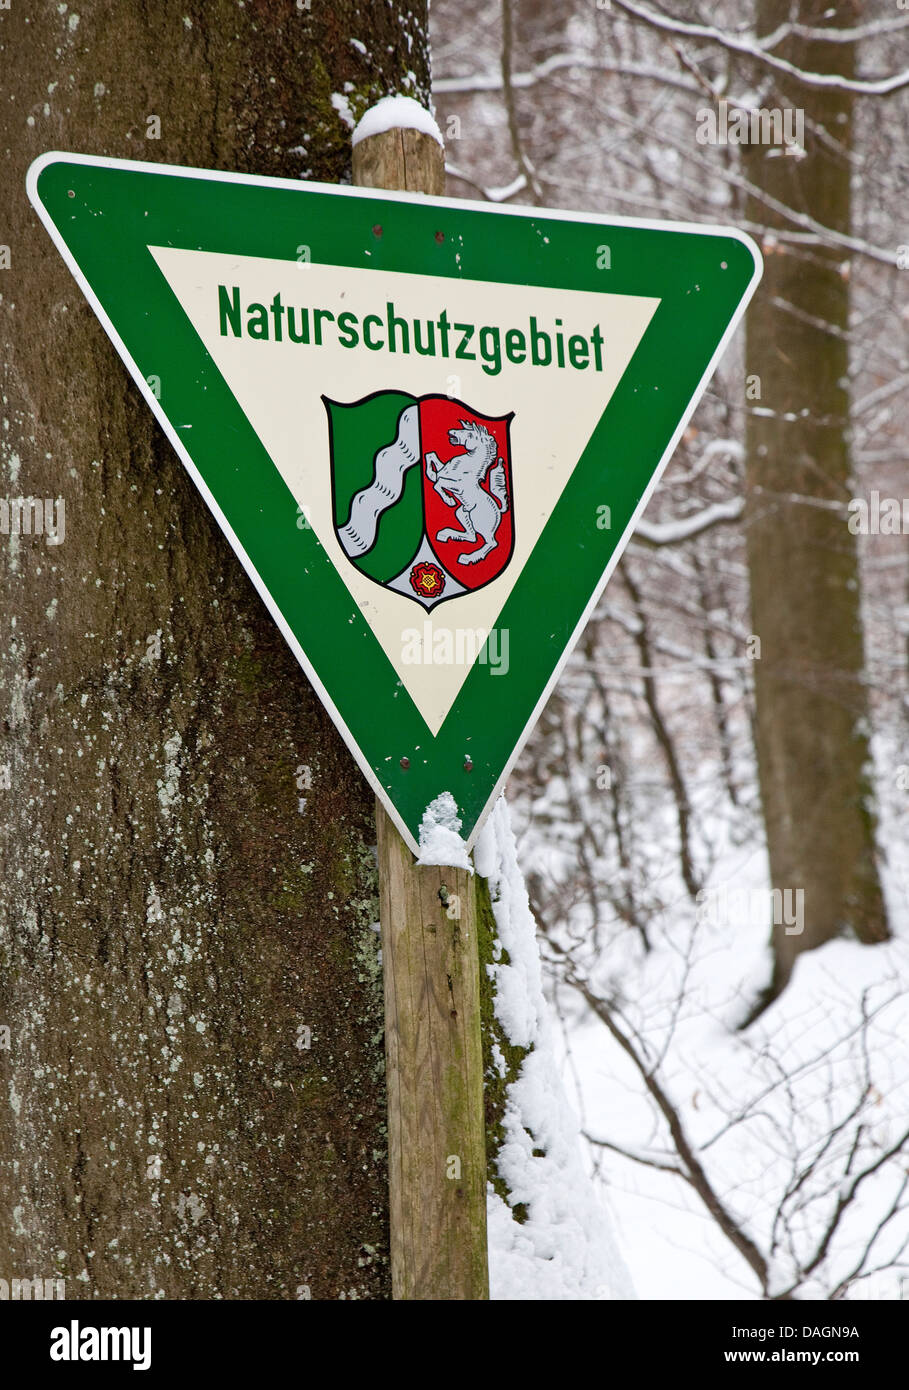 Riserva naturale a segno con il blasone regionale del Land Renania settentrionale-Vestfalia in inverno, in Germania, in Renania settentrionale-Vestfalia Foto Stock